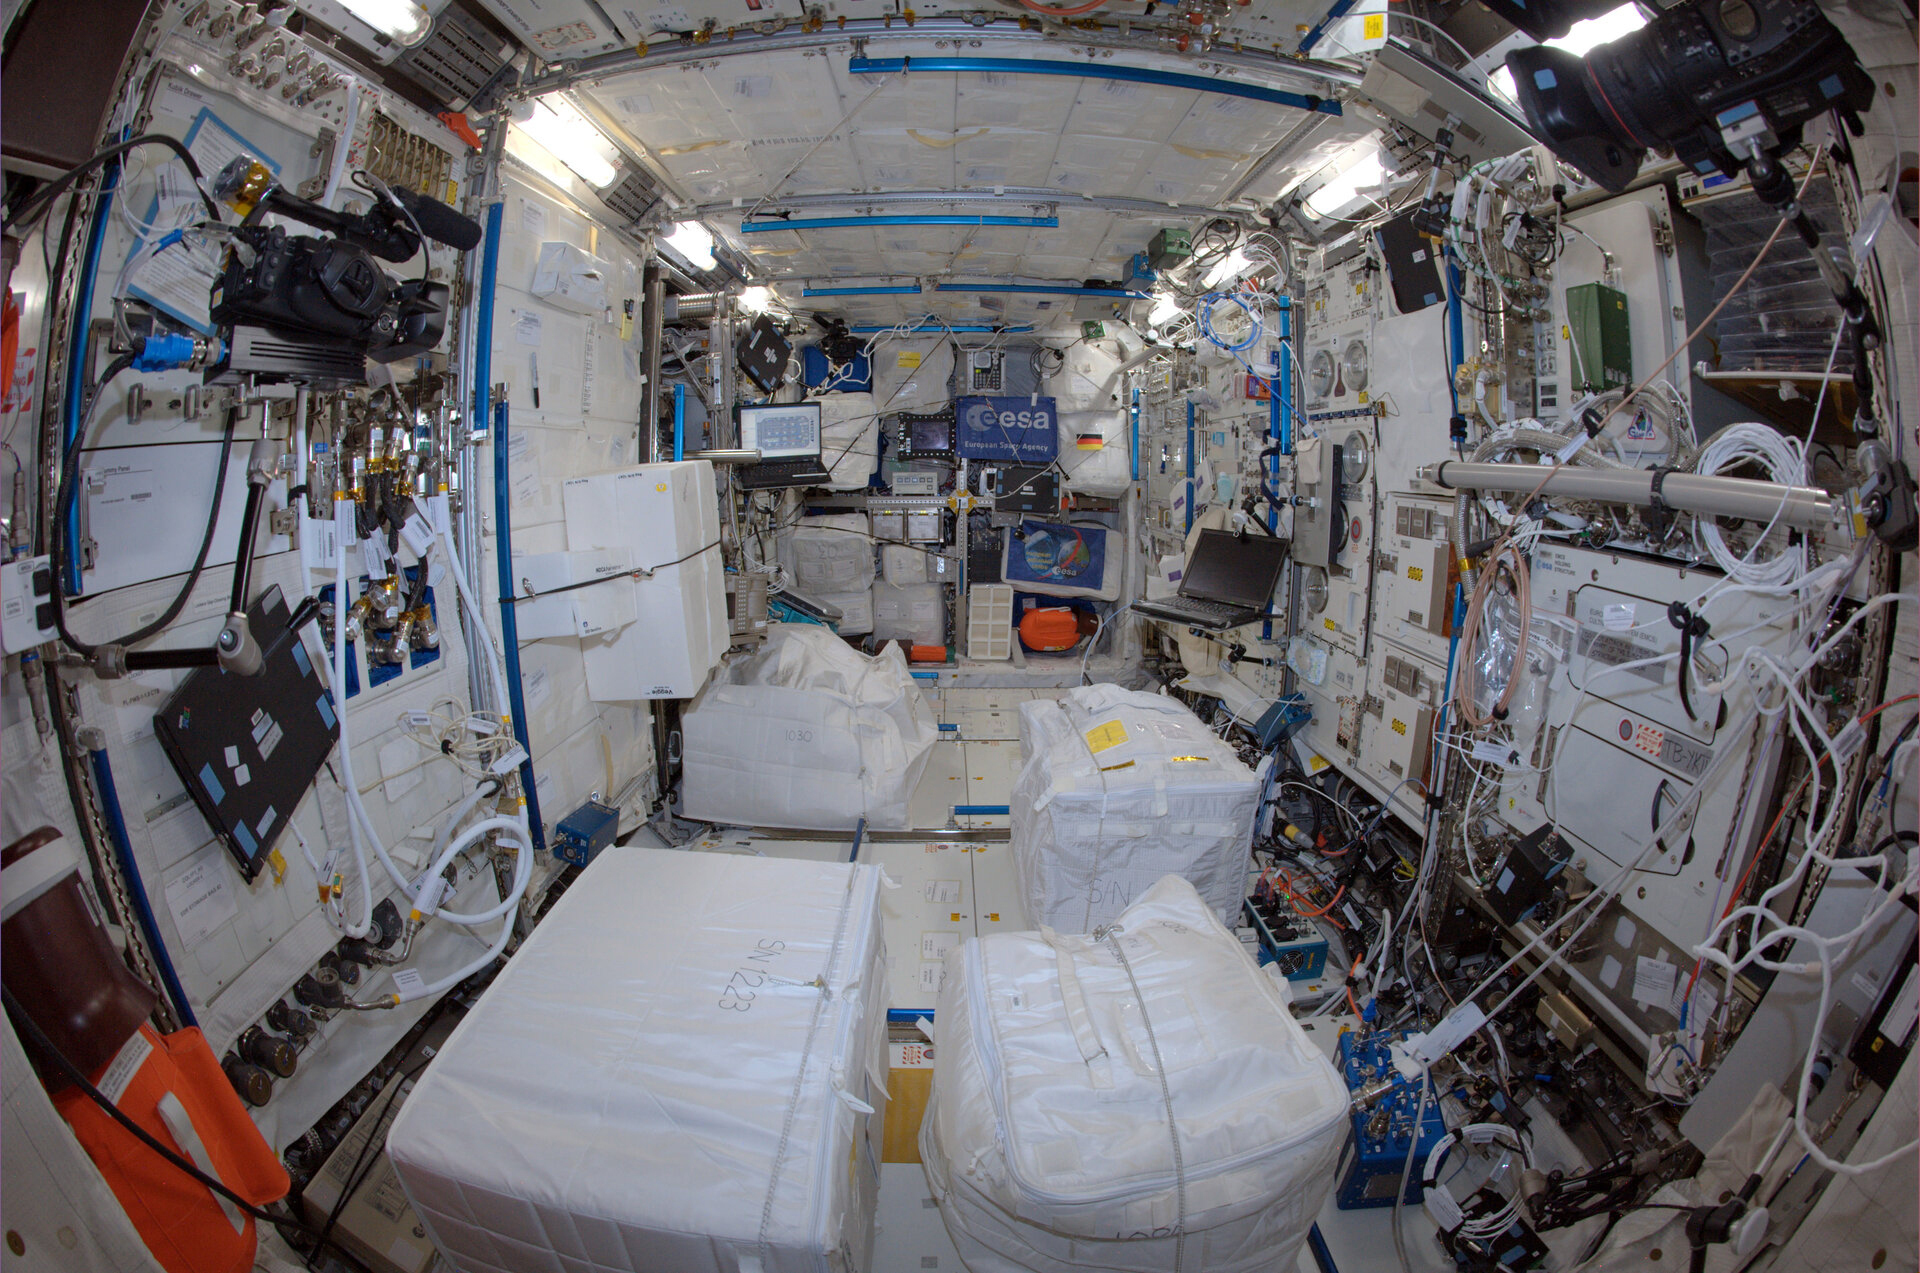 Laboratorio espacial Columbus de la ESA en 2014 durante la misin 'Blue Dot' del astronauta Alexander Gerst en la Estacin Espacial Internacional.